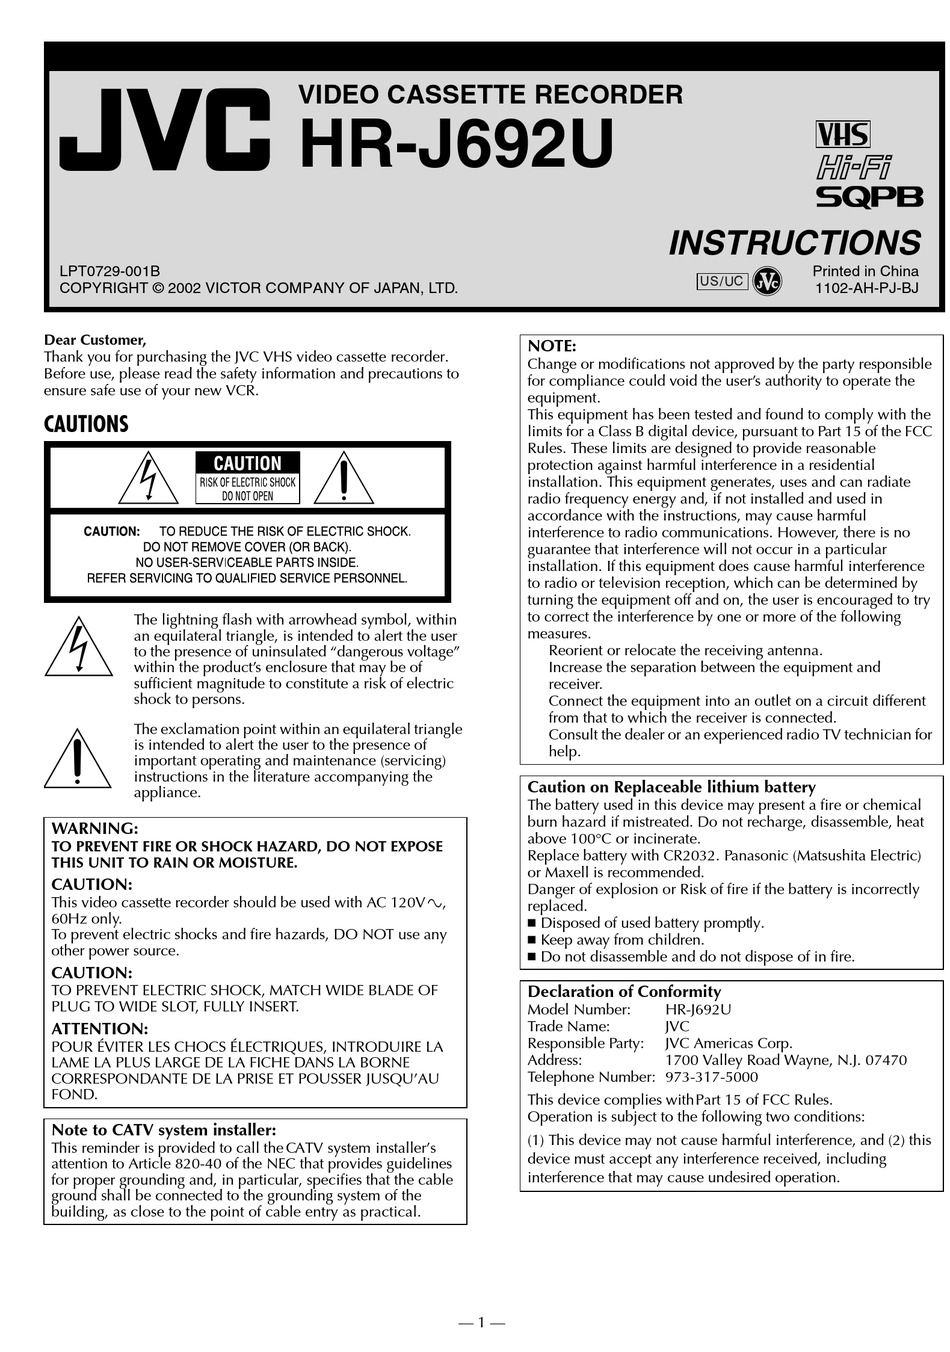 Jvc Hr J692u Instructions Manual Pdf Download Manualslib